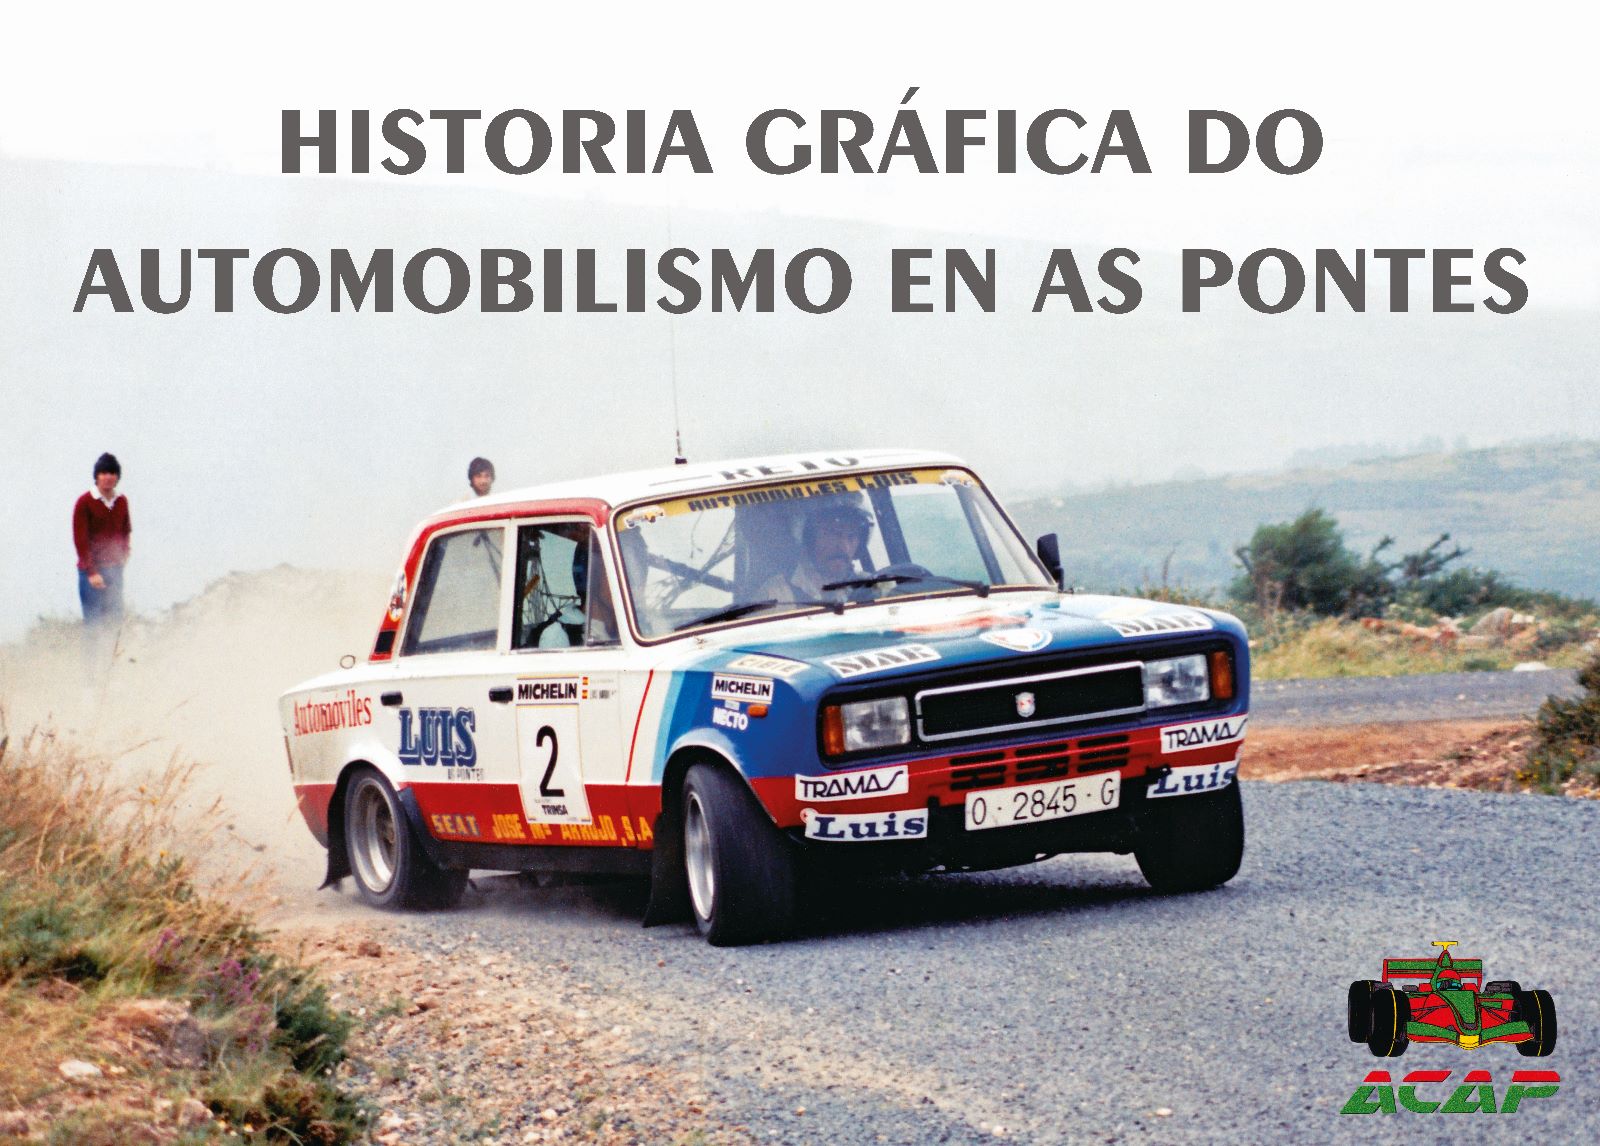 PRESENTACIÓN DO LIBRO HISTORIA GRÁFICA DO AUTOMOBILISMO EN AS PONTES